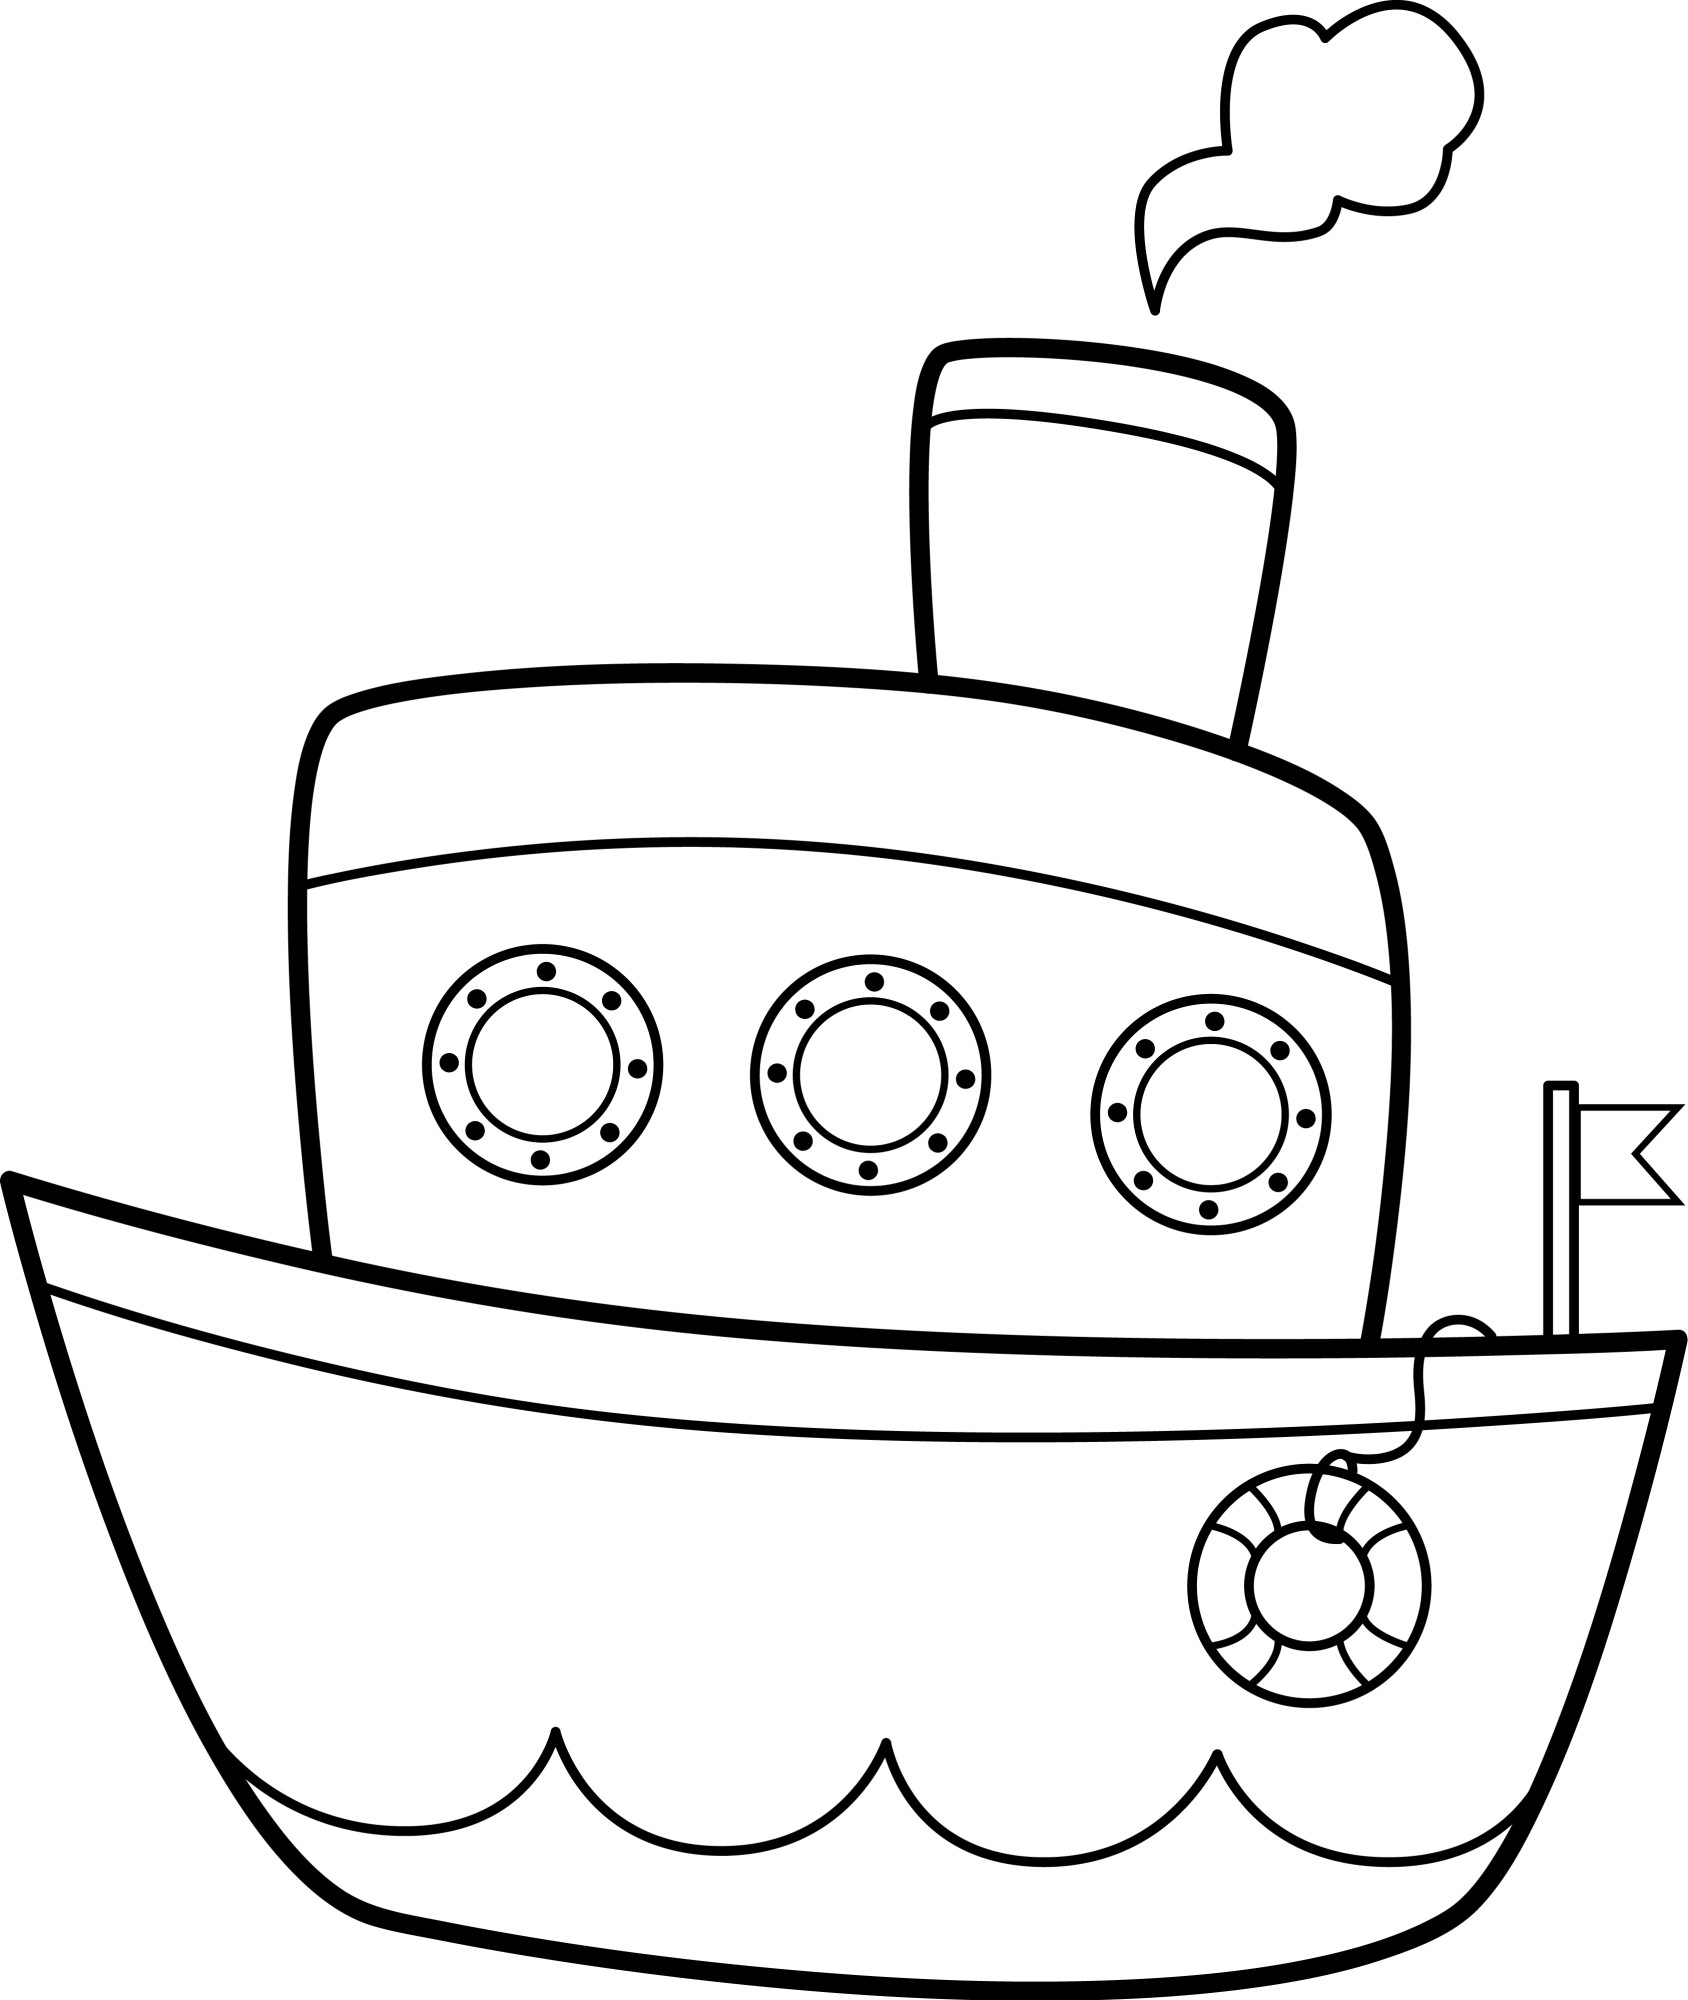 Раскраска для детей: игрушечный кораблик с иллюминаторами и паром из трубы